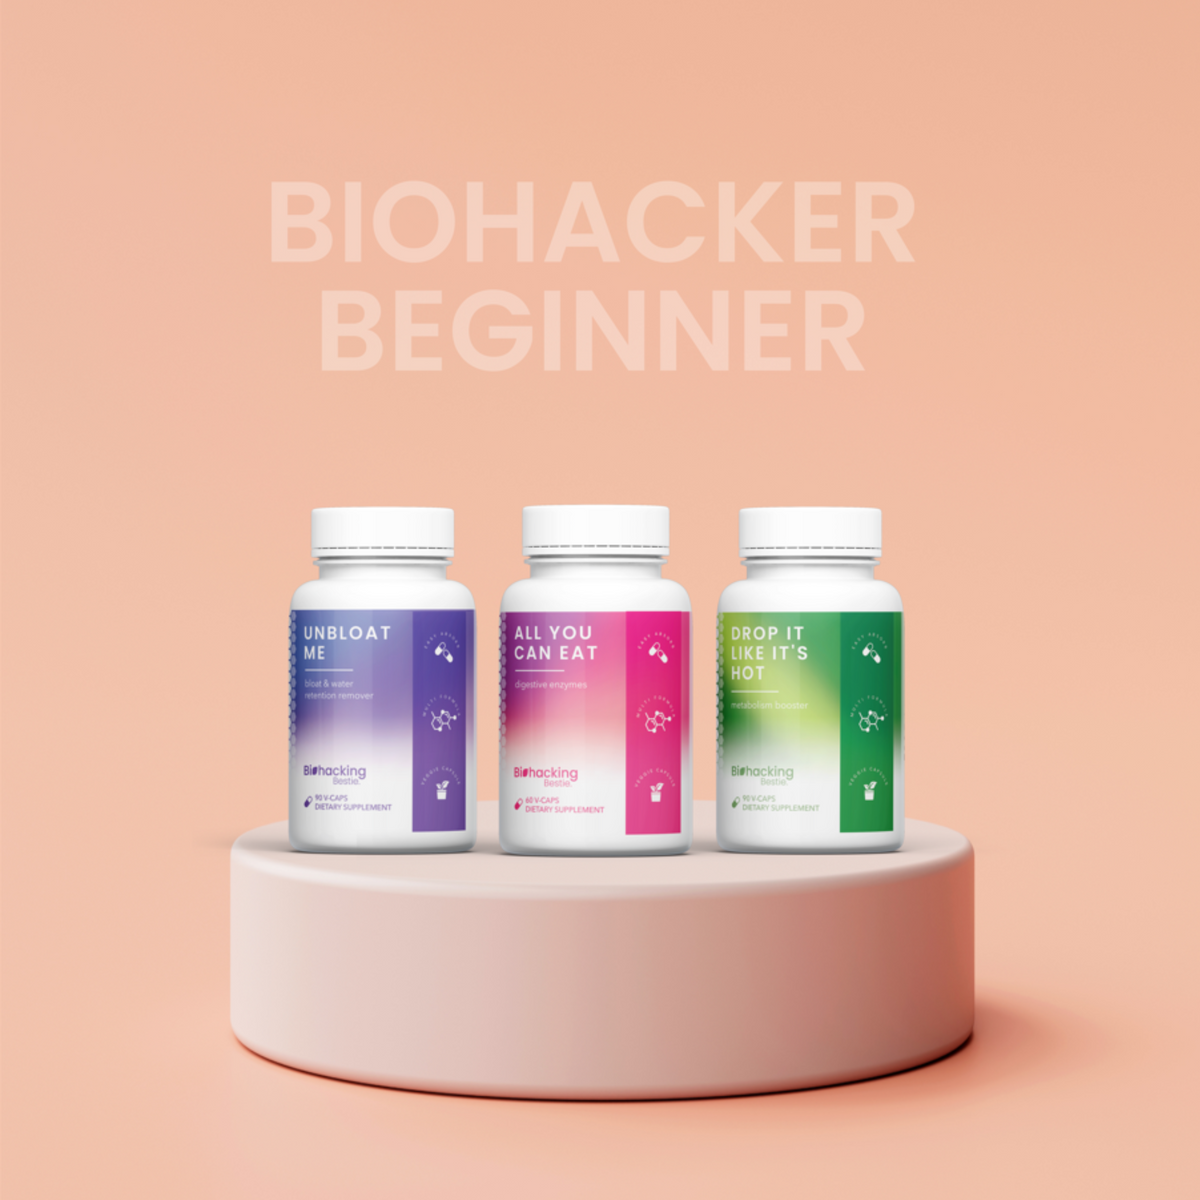 Biohacker Beginner